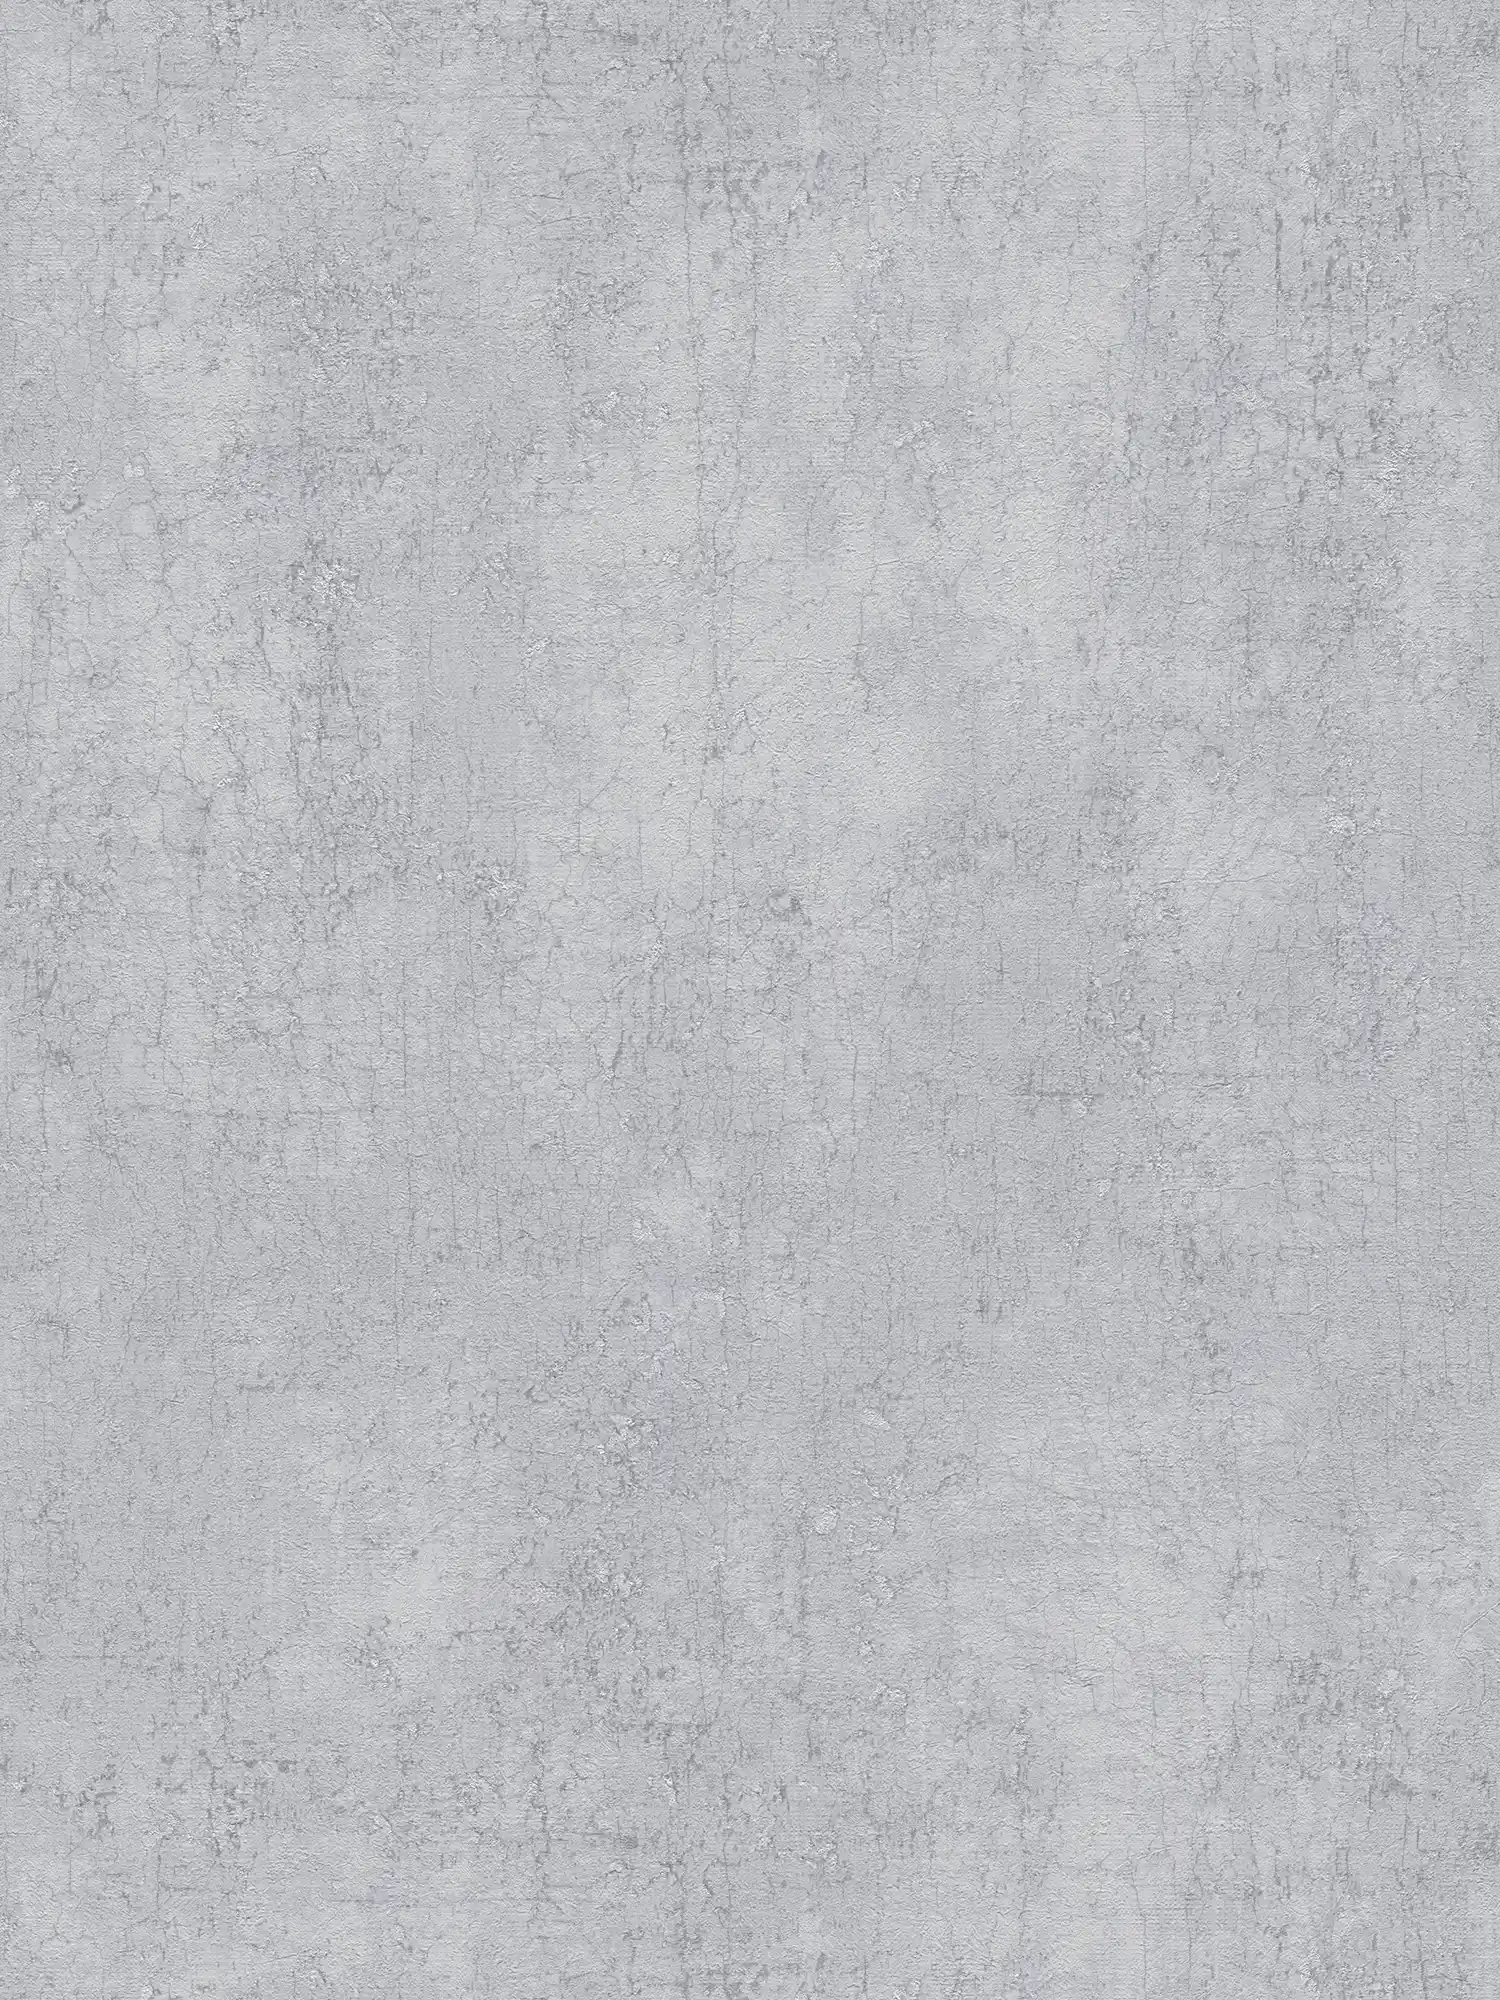 Gipsvezelbehang steengrijs met zilveren accenten - grijs, metallic
